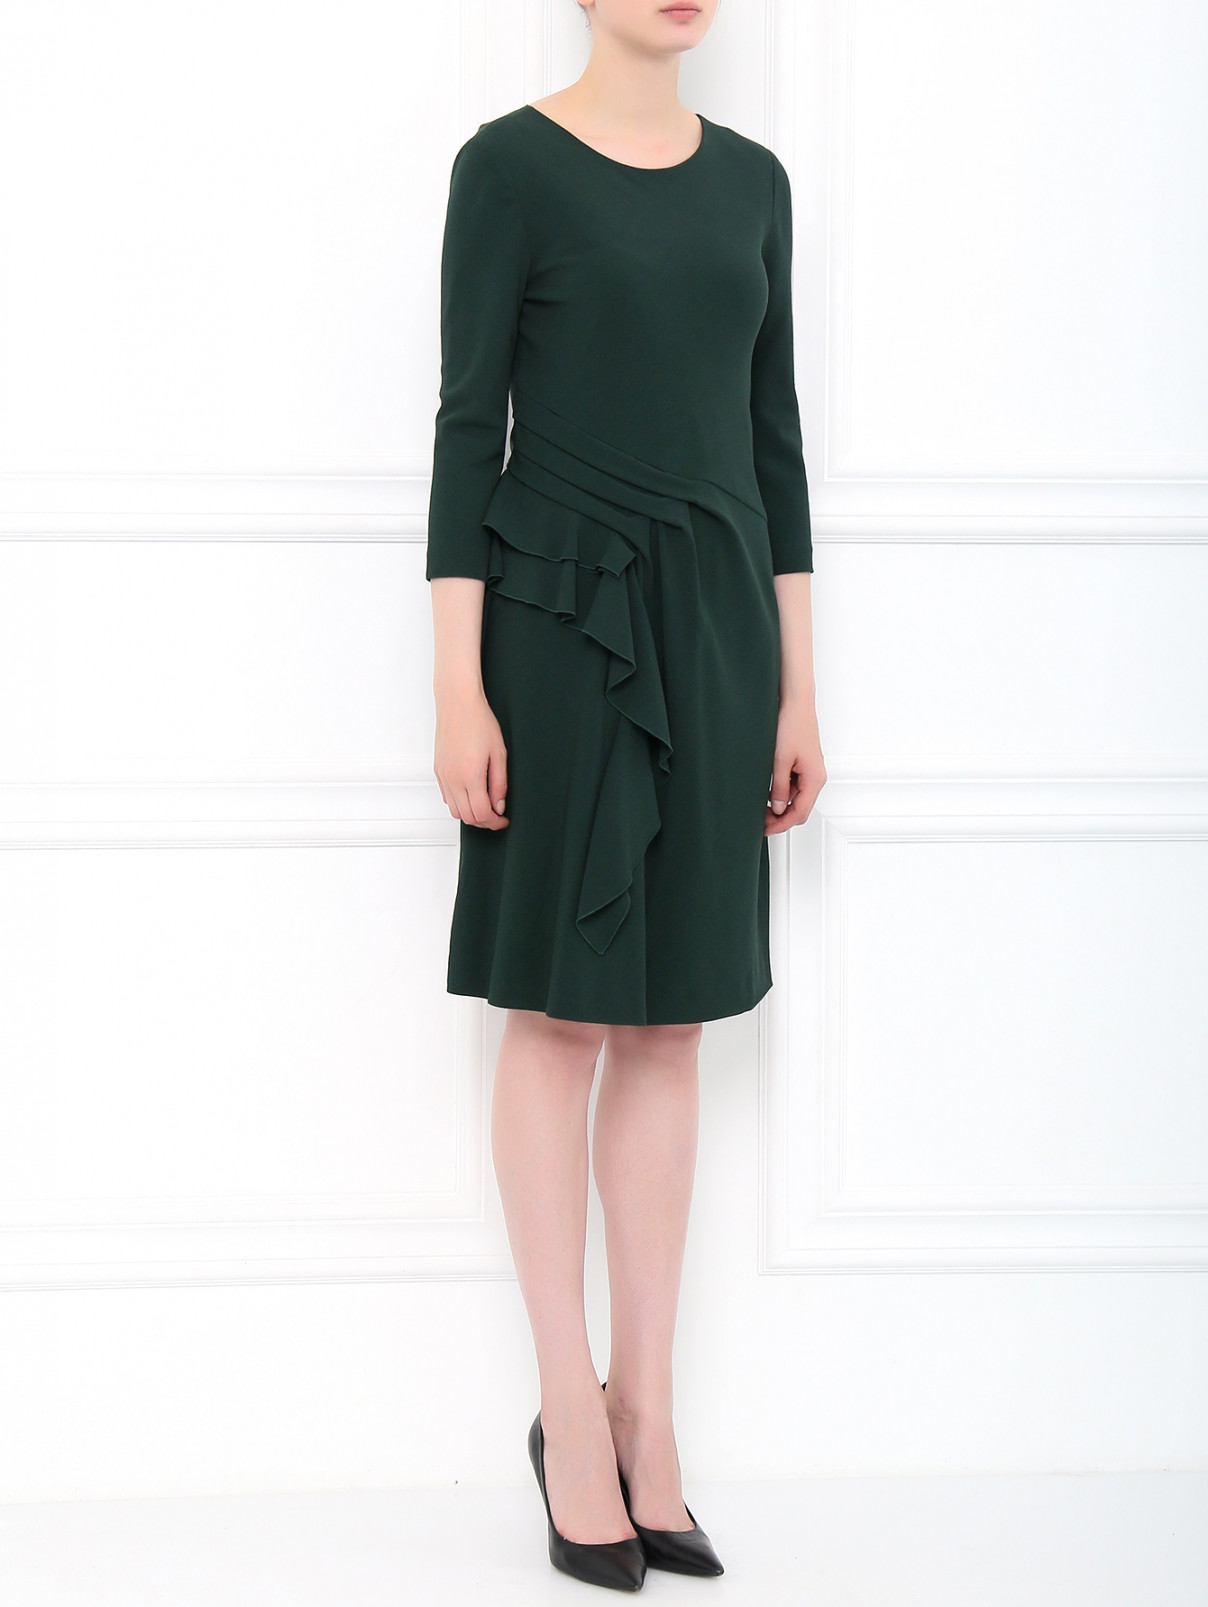 Платье-футляр с драпировкой Alberta Ferretti  –  Модель Общий вид  – Цвет:  Зеленый